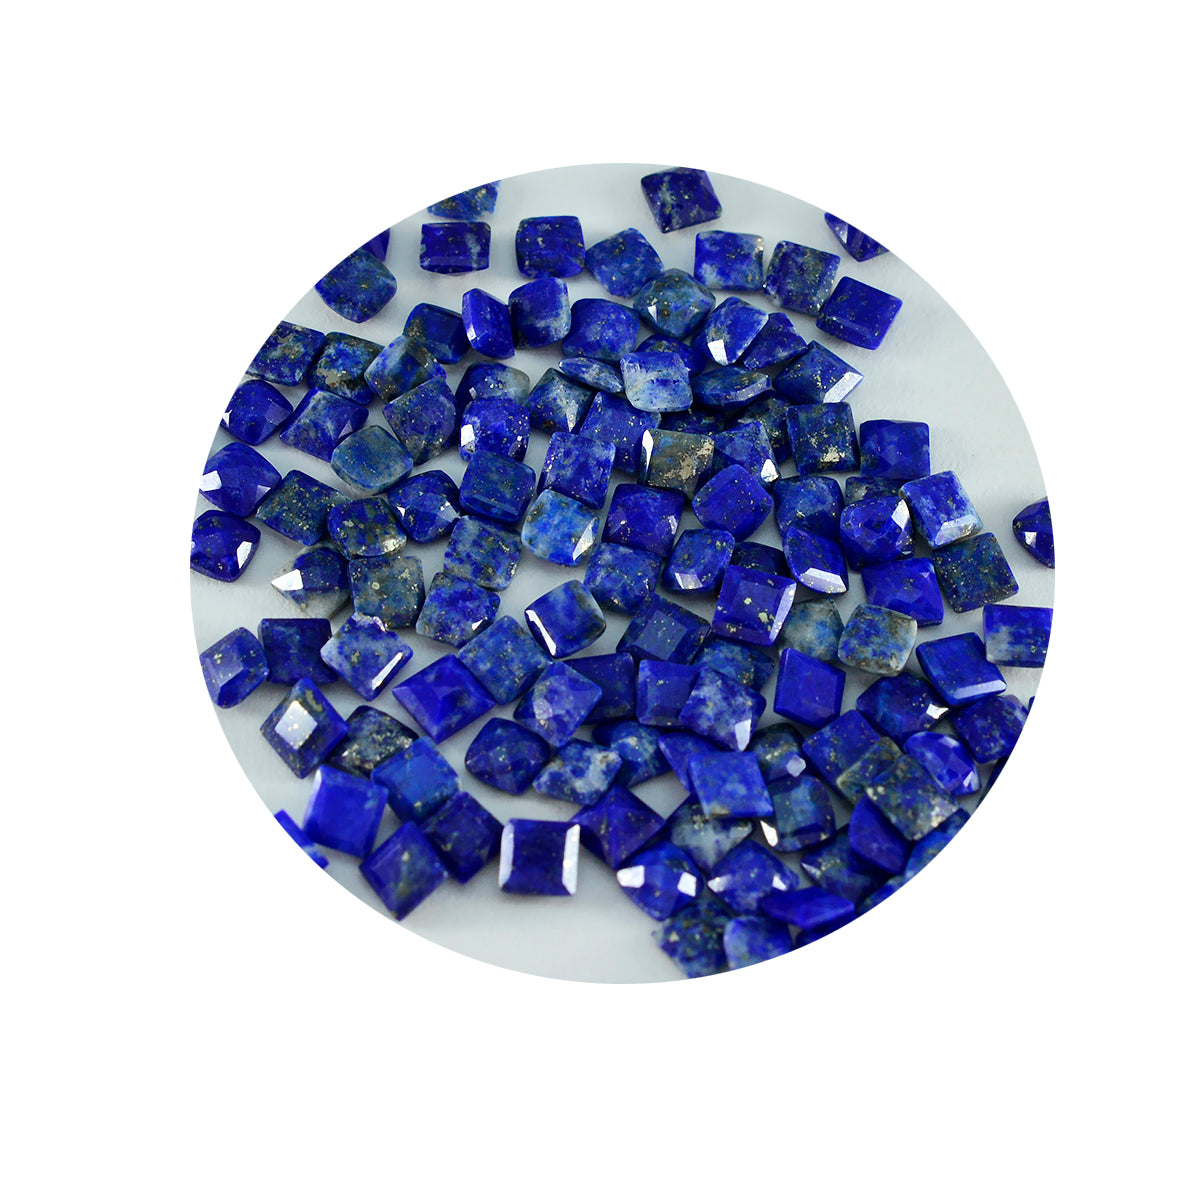 Riyogems 1 Stück echter blauer Lapislazuli, facettiert, 3 x 3 mm, quadratische Form, hübsche, hochwertige lose Edelsteine